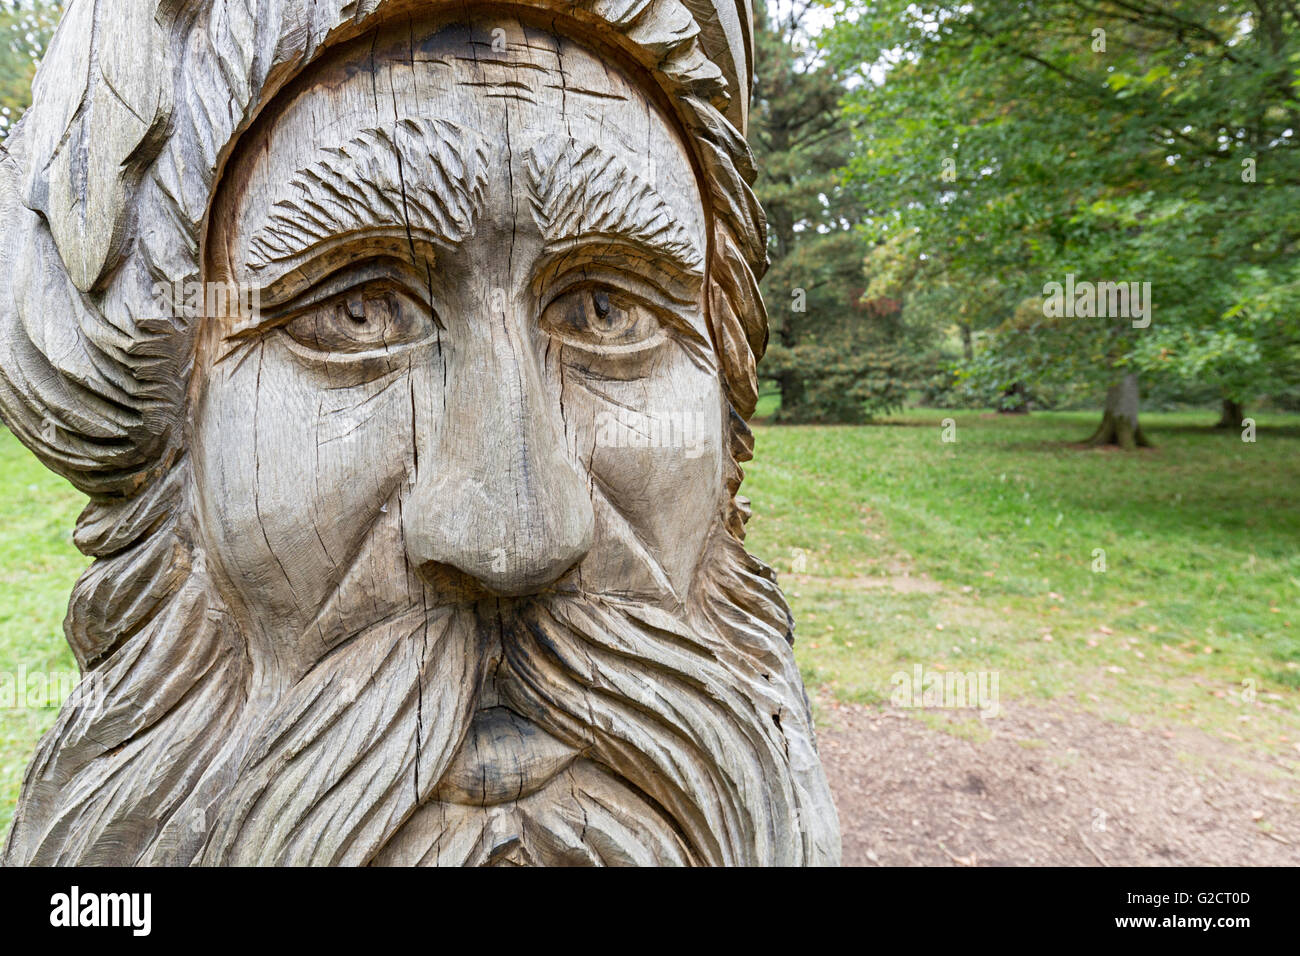 Tête en bois sculpté, Westonbirt Arboretum, Gloucestershire, Royaume-Uni, Enhgland Banque D'Images